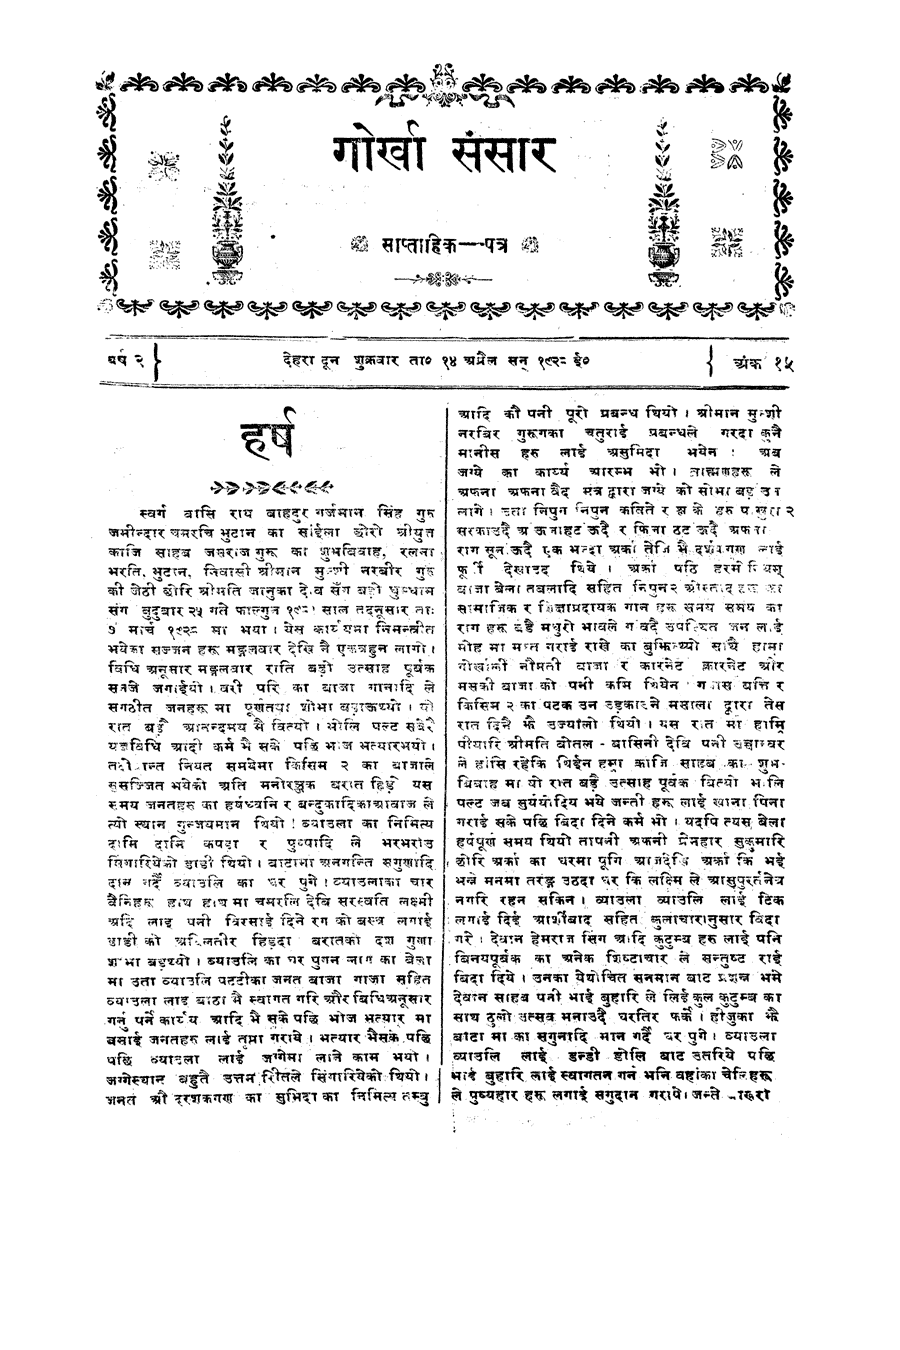 Gorkha Sansar, 13 April 1928, page 6